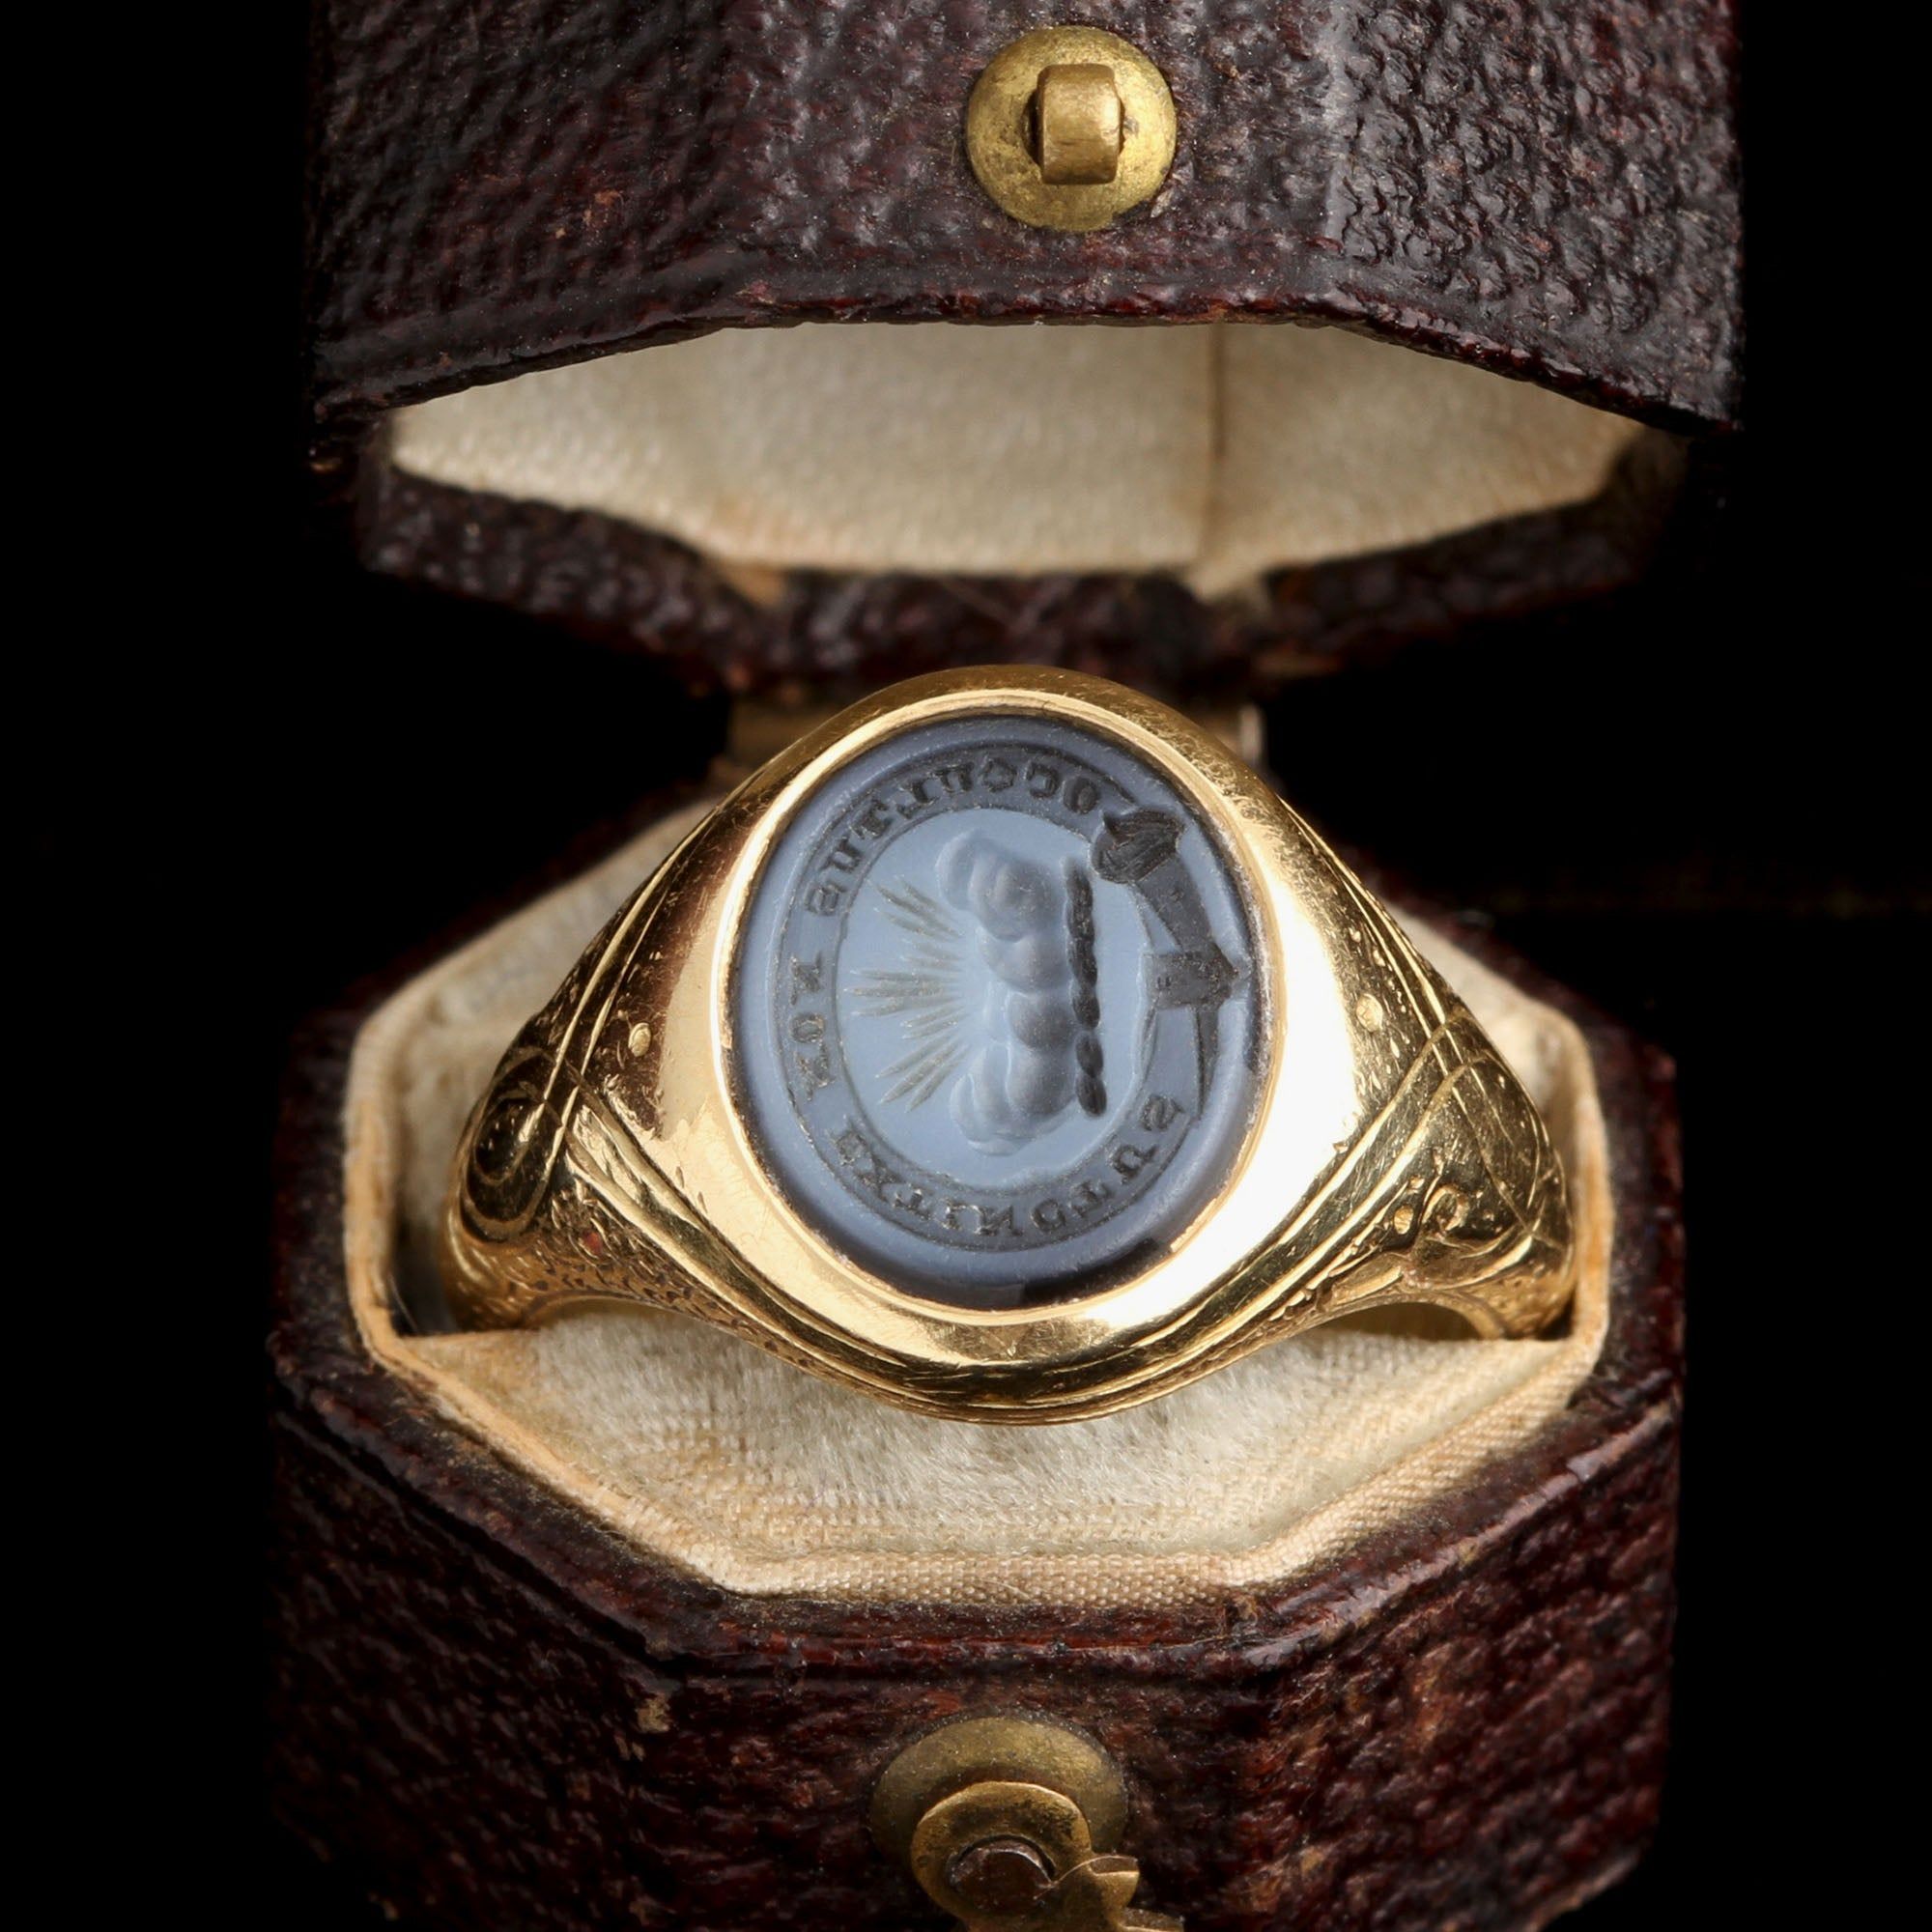 Victorian "Occultus Non Extinctus" Memorial Ring